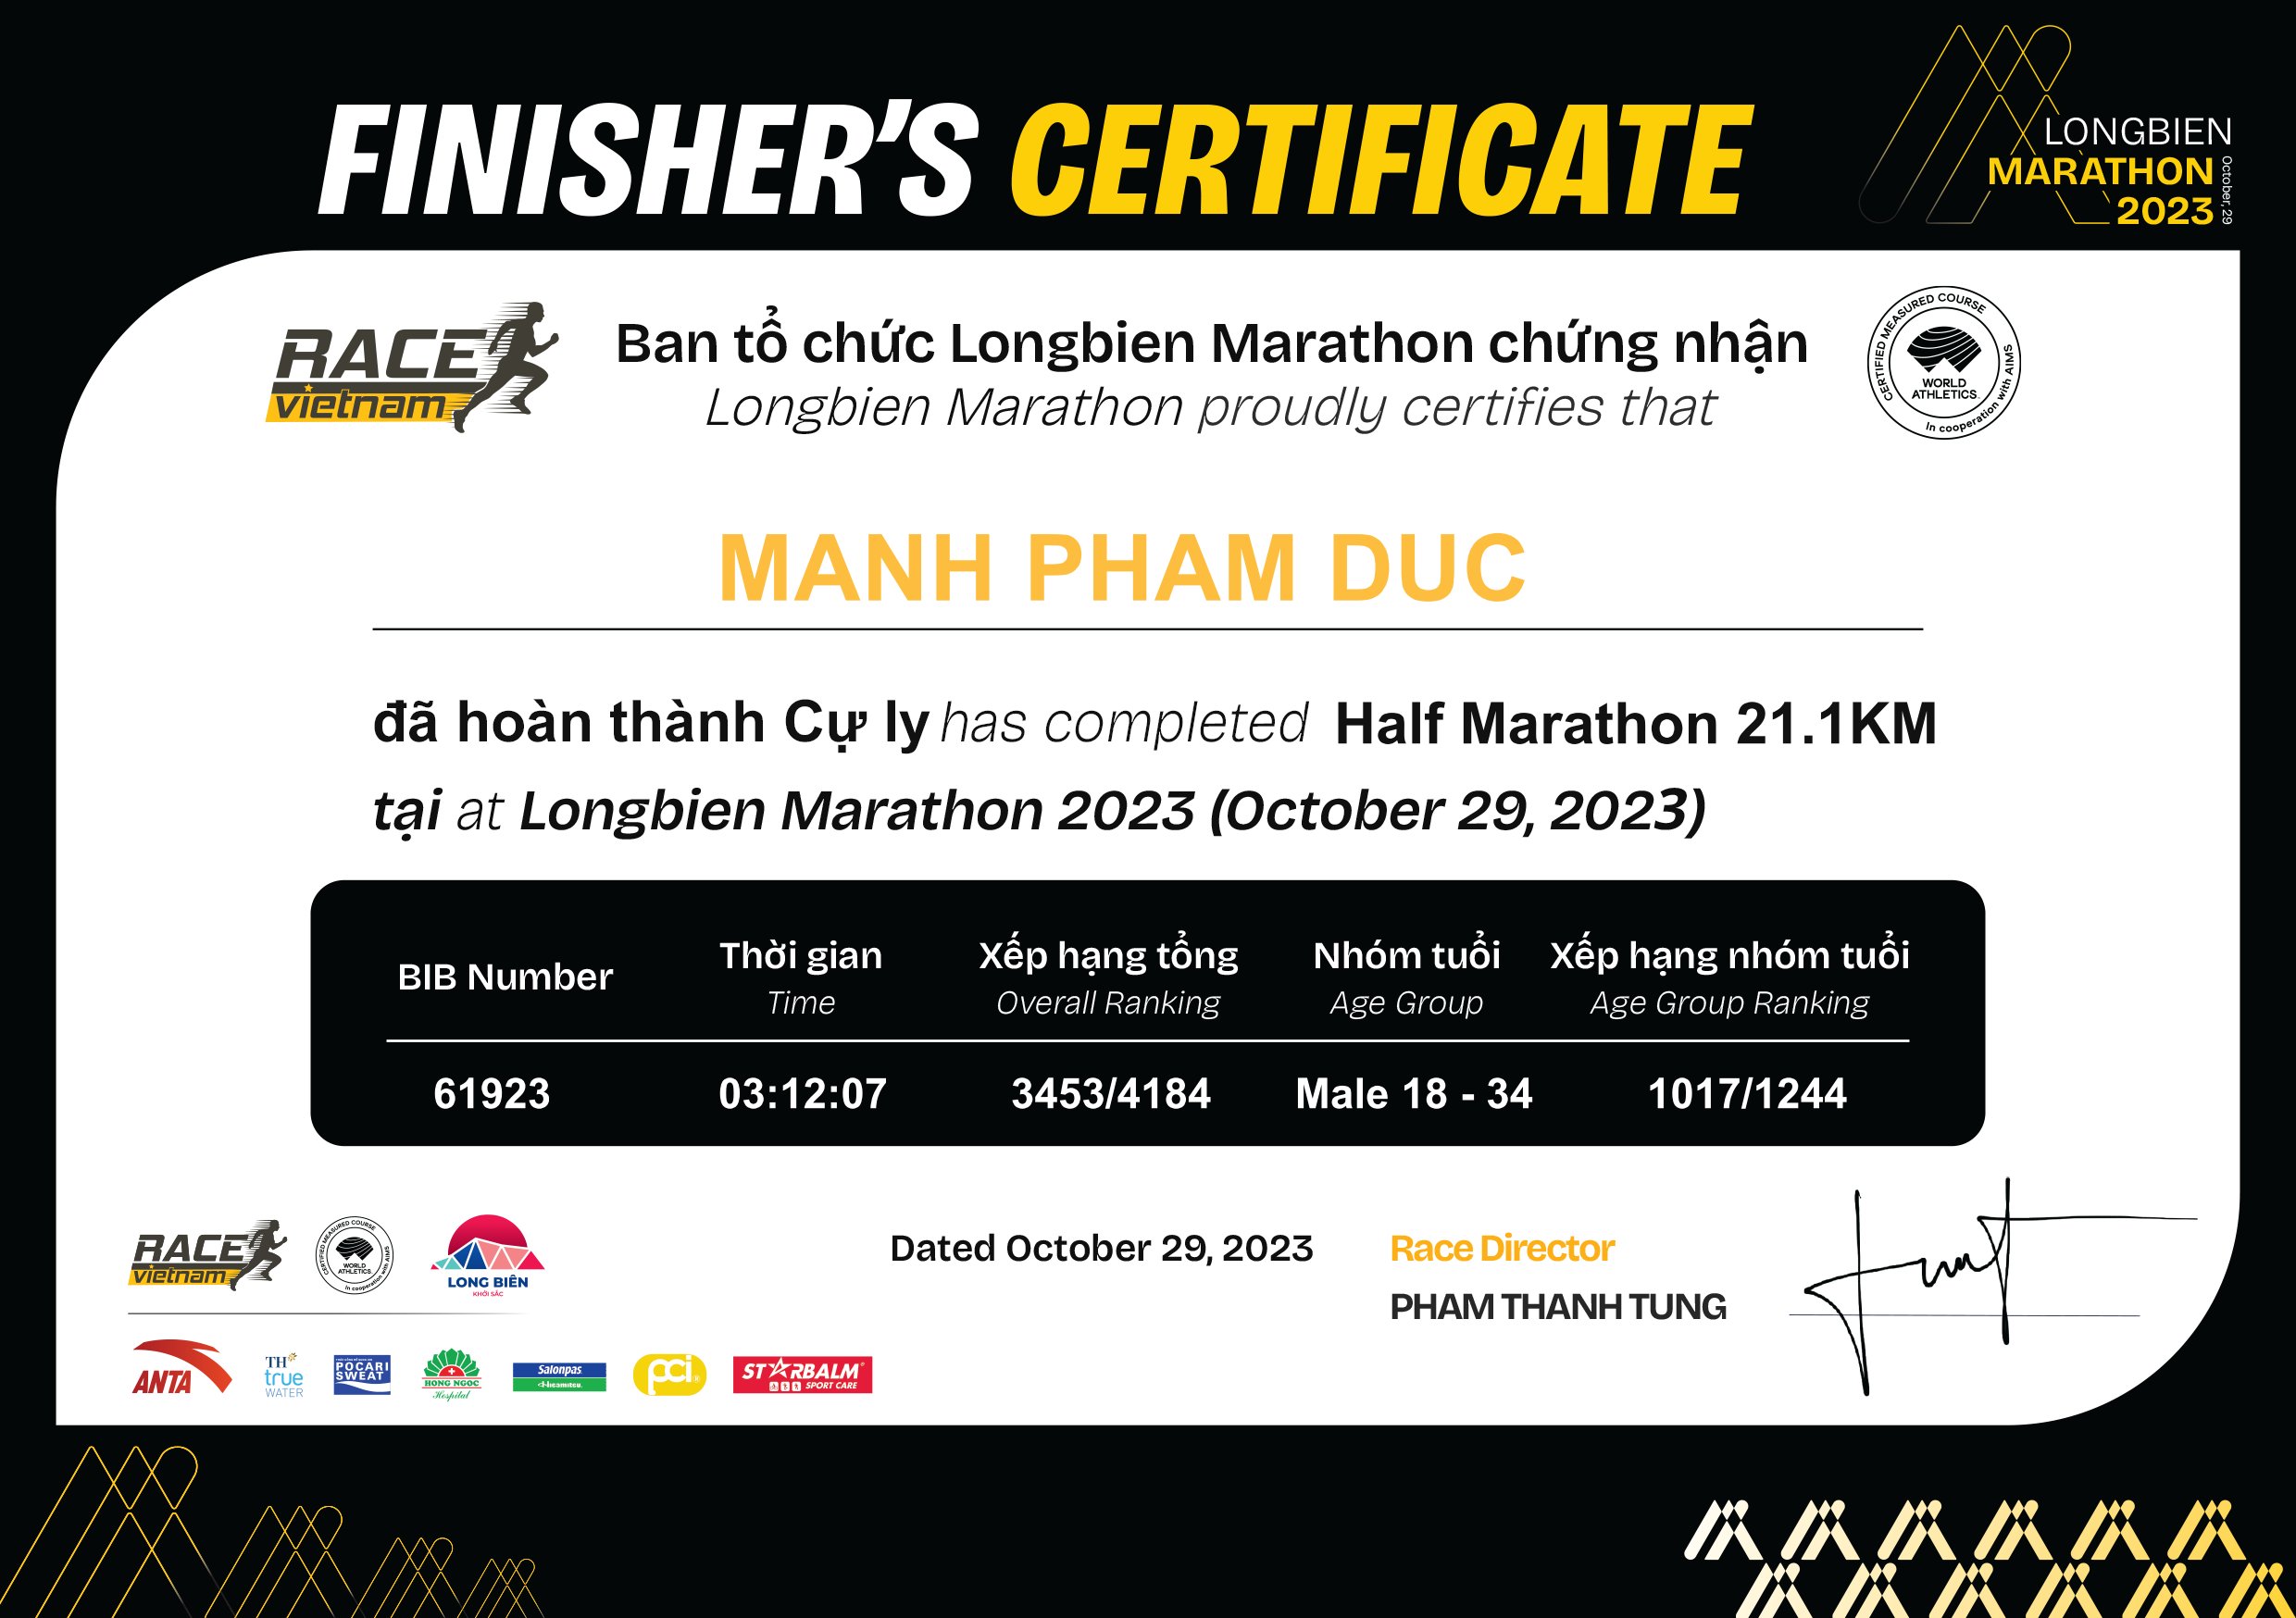 61923 - Manh Pham duc